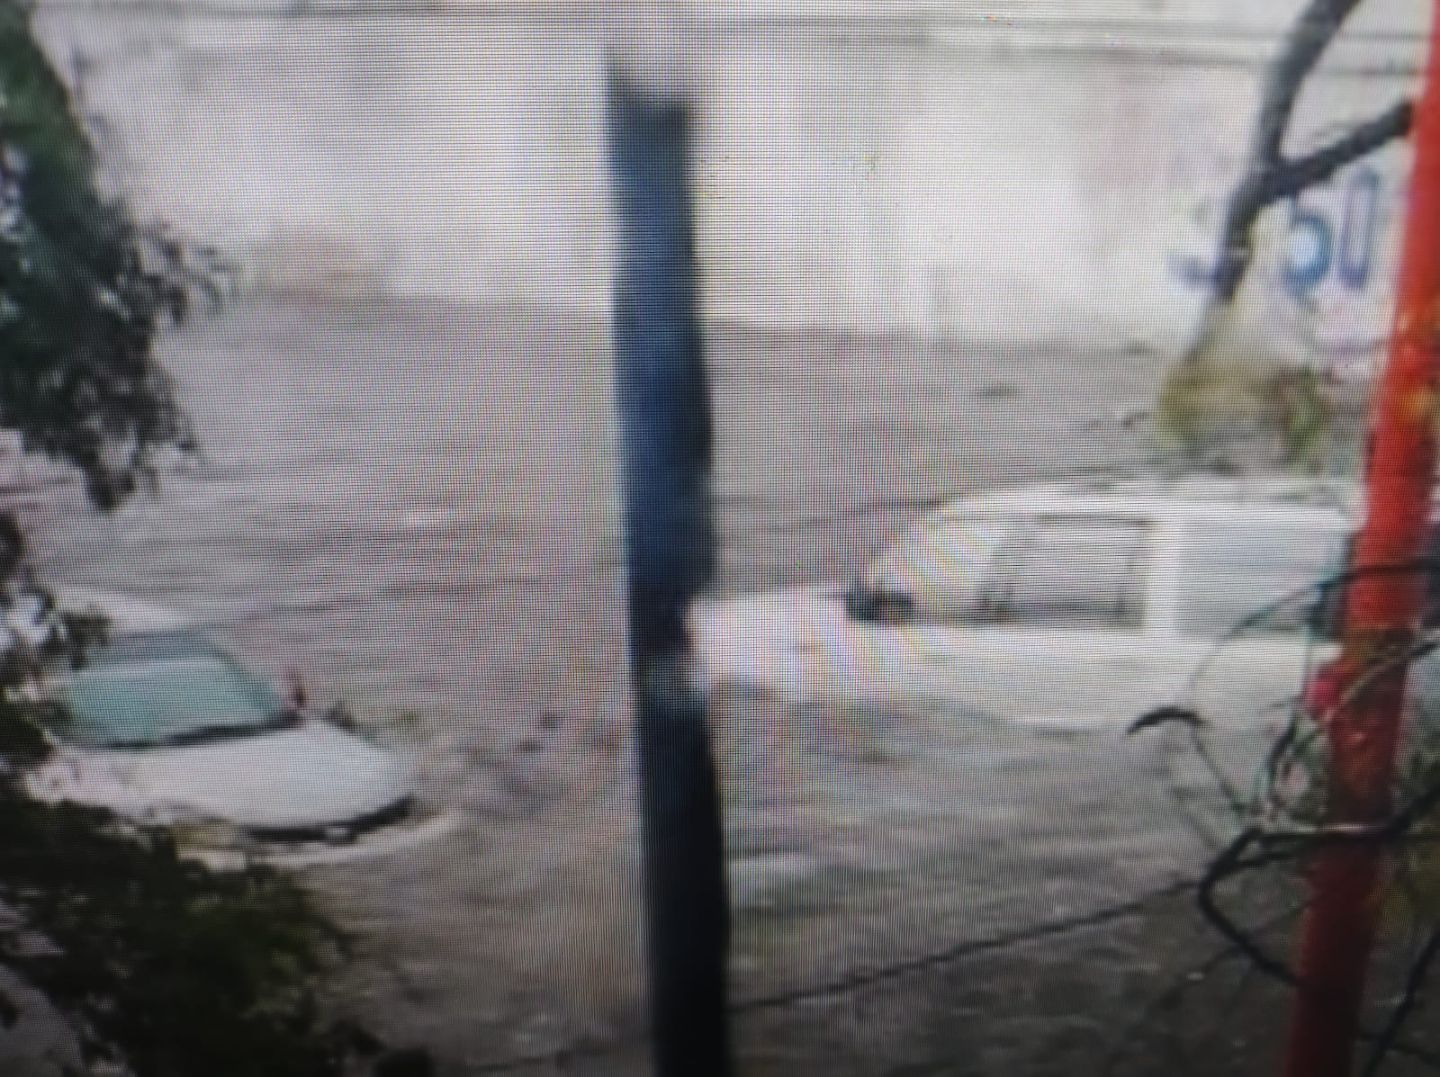 #Por aguacero Ecatepec bajo el agua por falta de mantenimiento del drenaje, vecinos